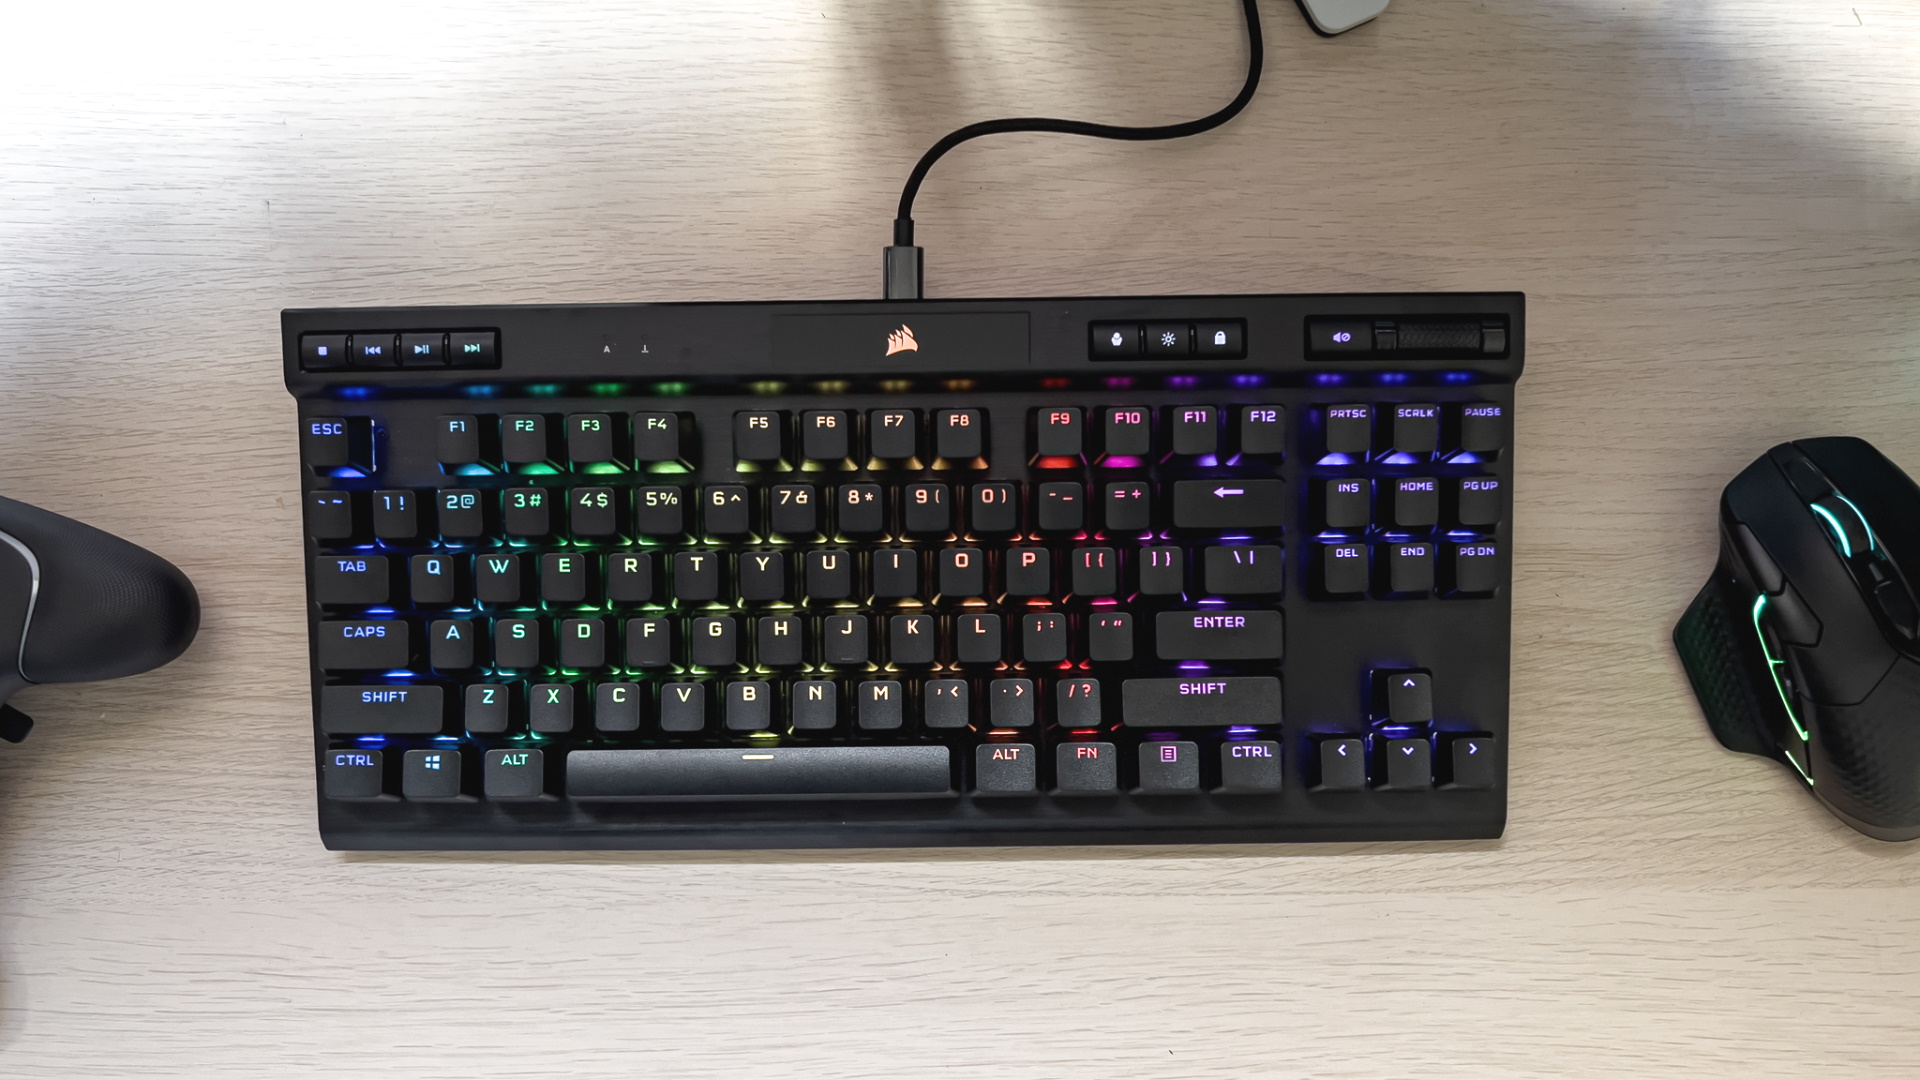 Corsair K70 TKL OPX gaming keyboard